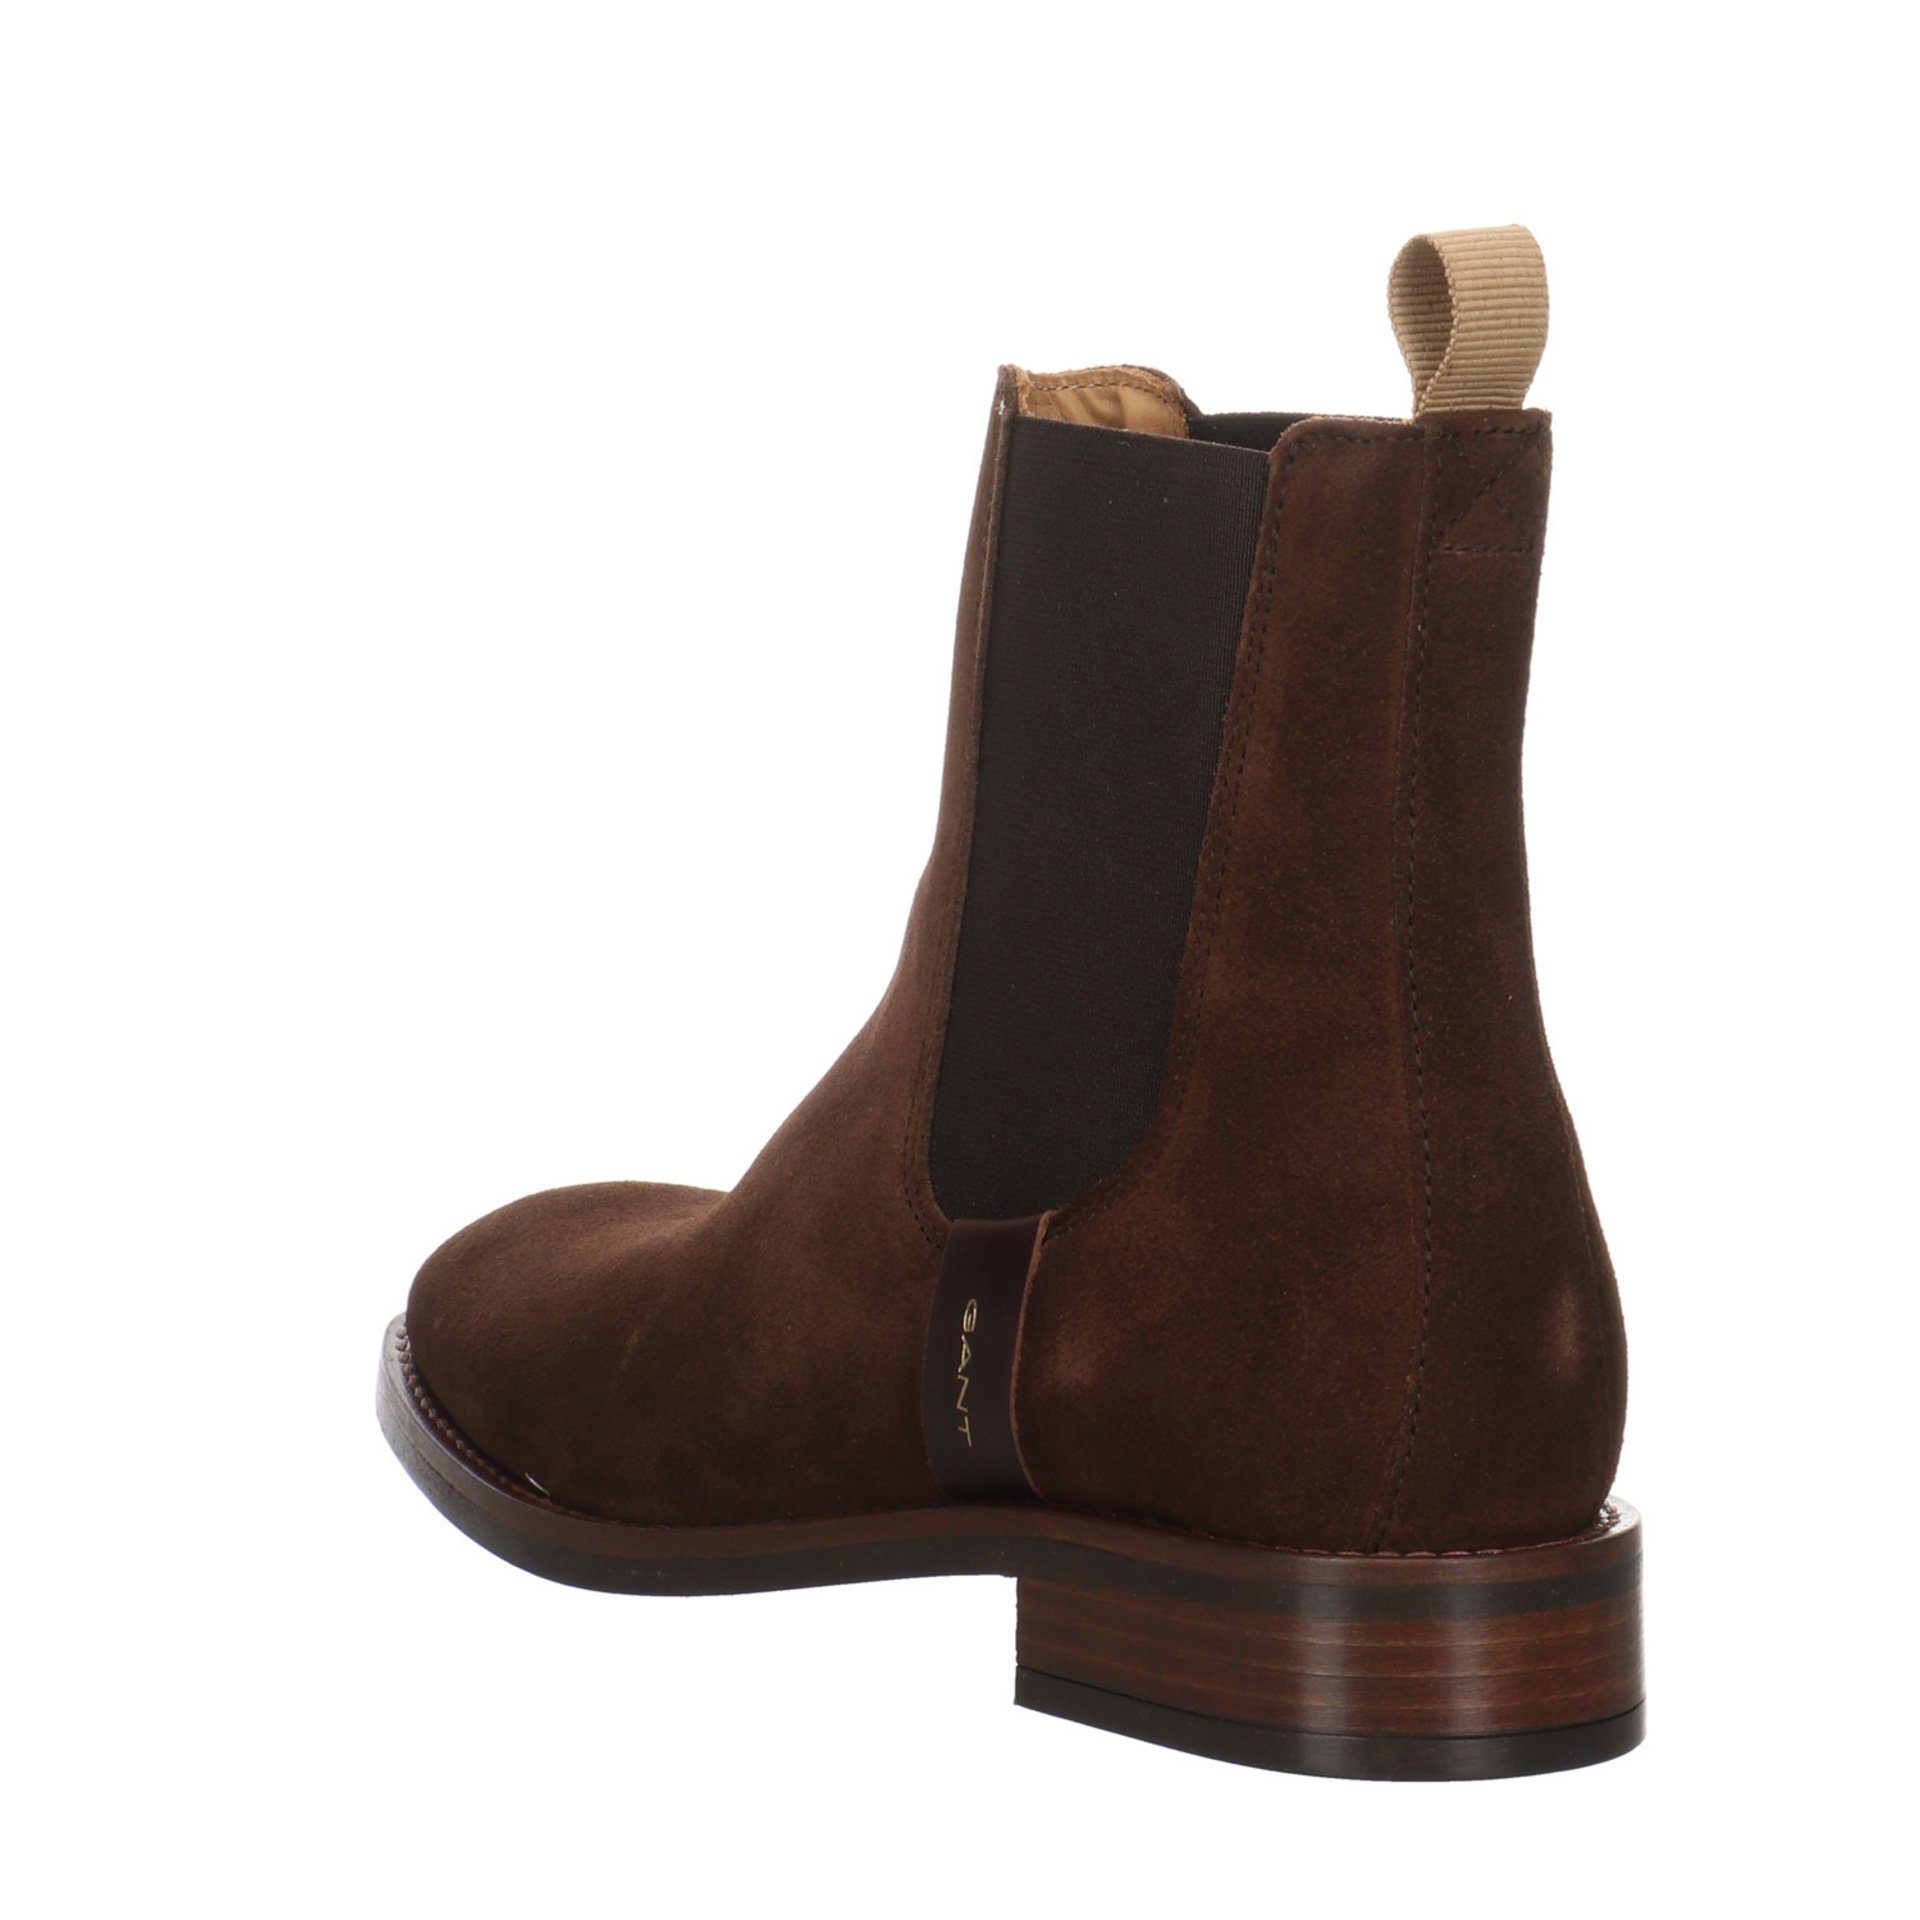 Gant Damen Stiefeletten Schuhe Leder-/Textilkombination Stiefelette Boots FAYY dark Chelsea brown